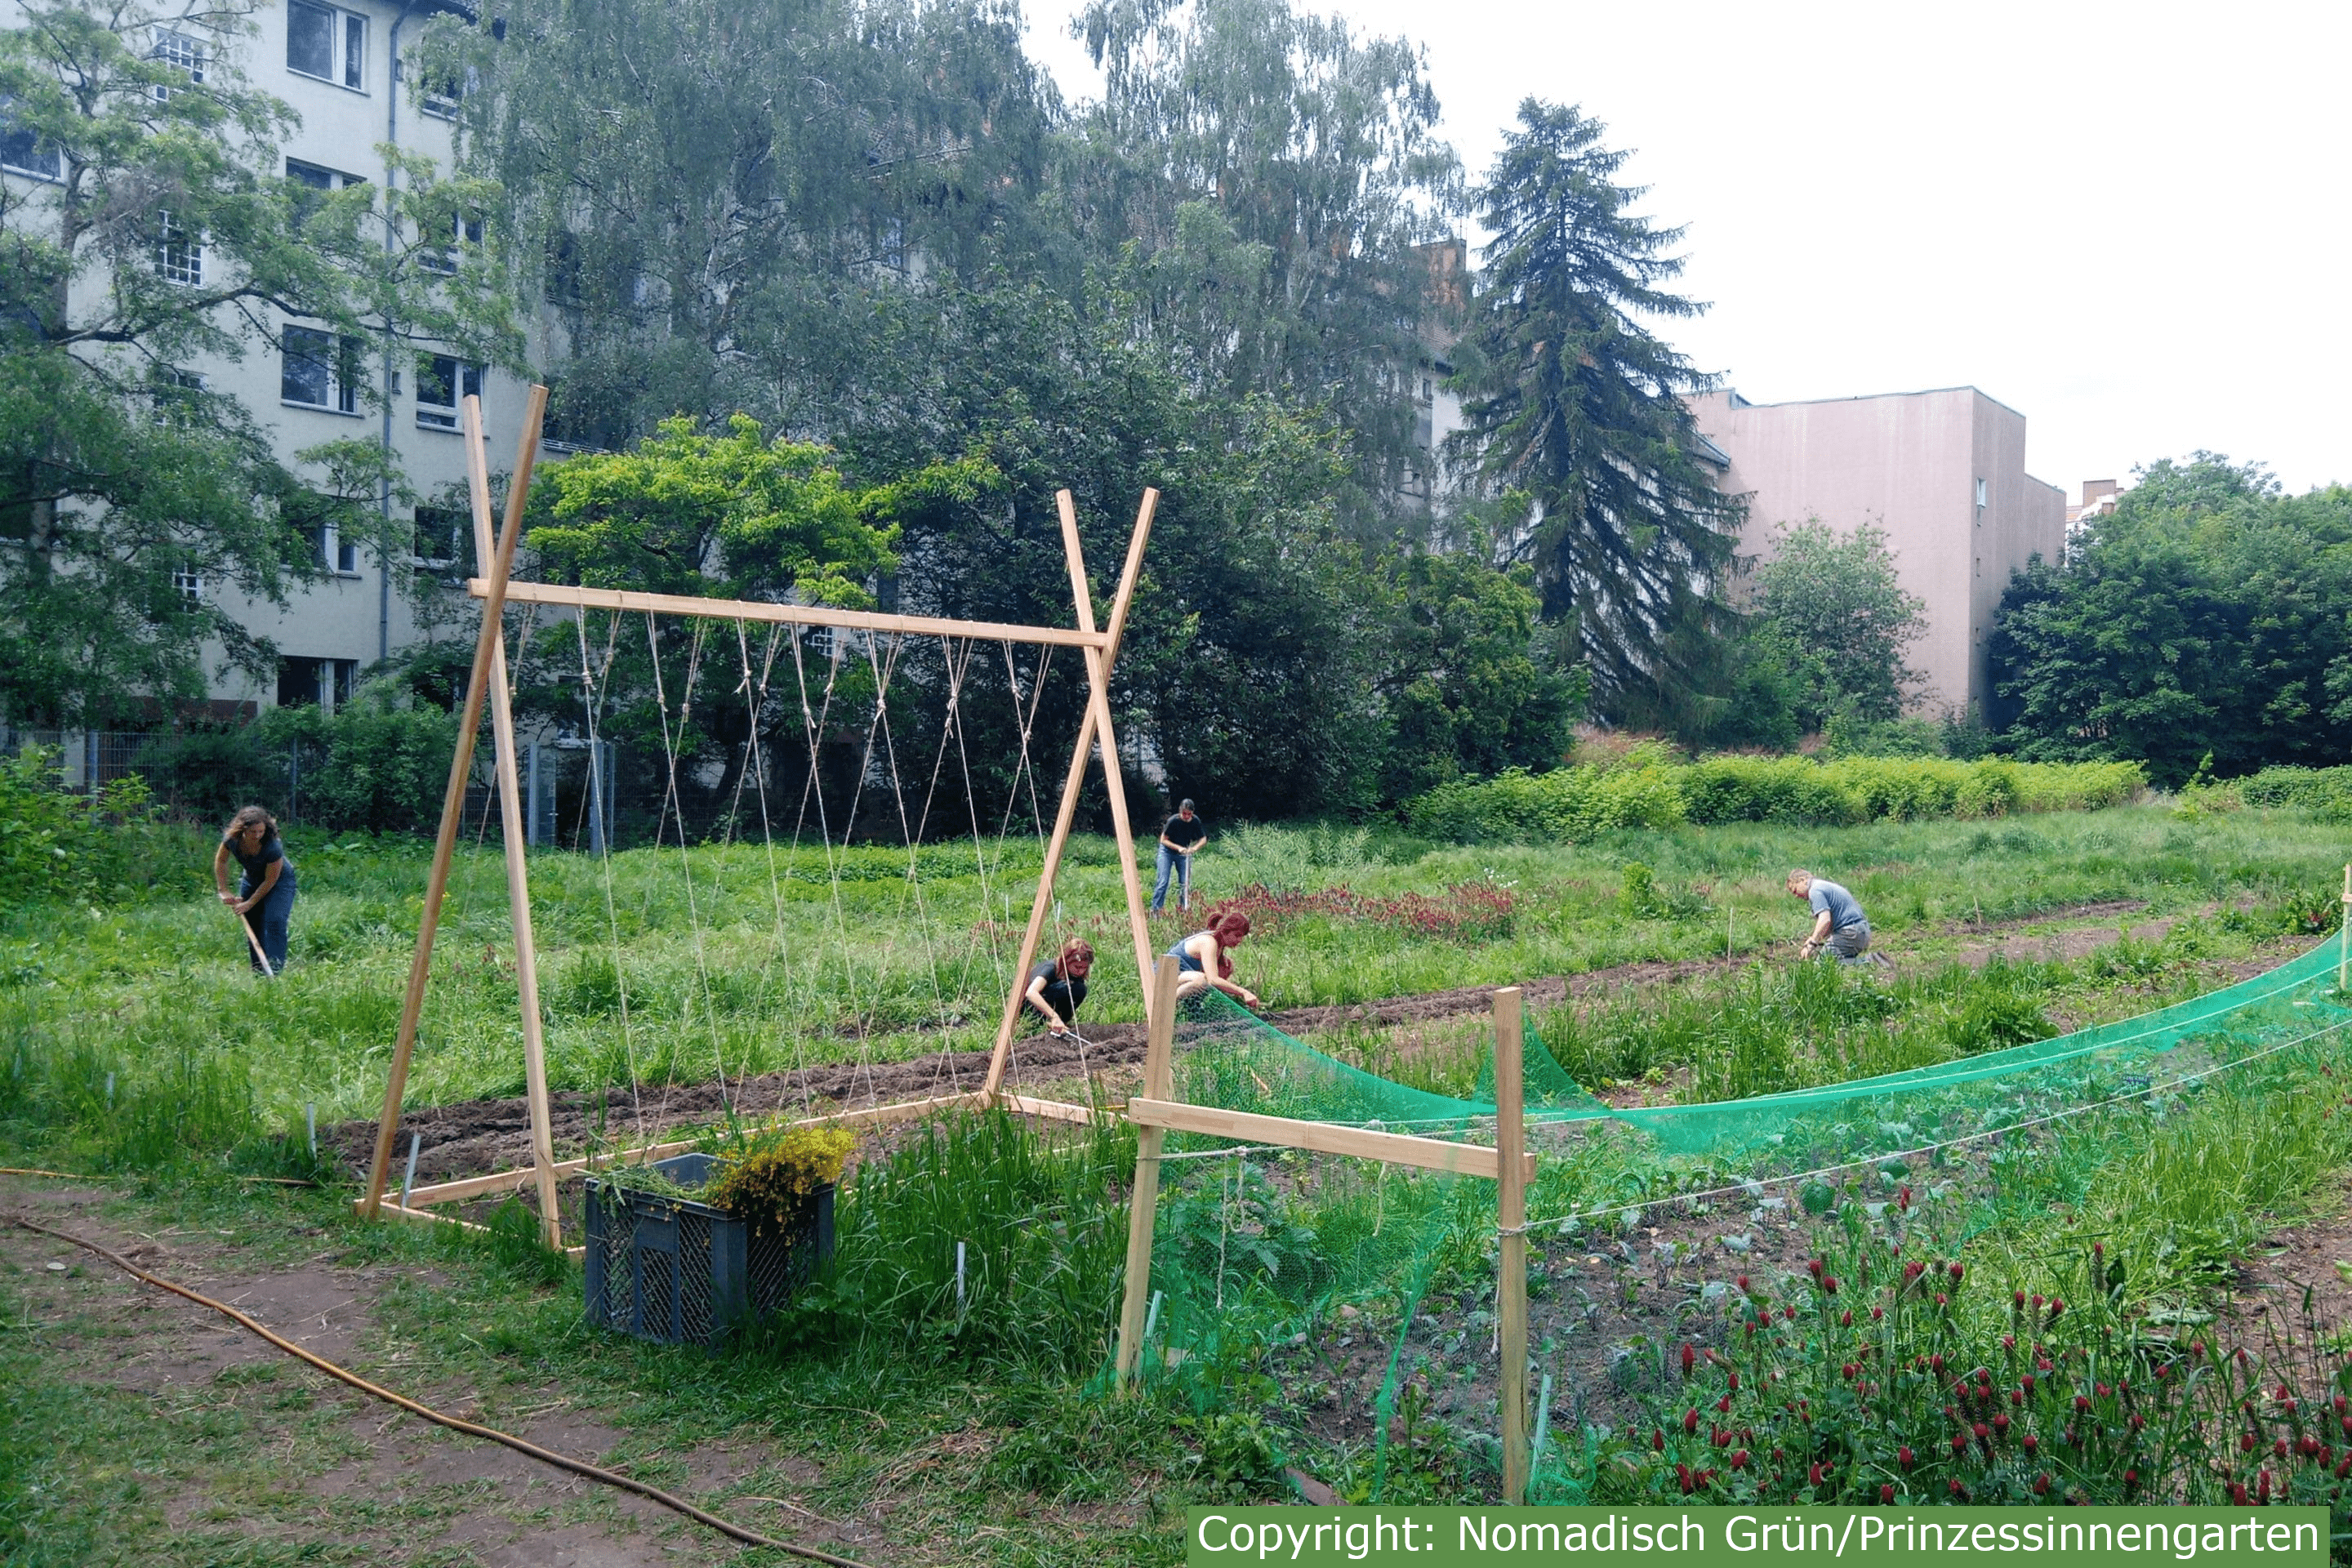 每年3月到10月是公主花园的园艺季，开放日会向所有感兴趣的公众提供参与城市园艺、了解有机蔬菜种植和生物多样性的机会。图片来自Princess Garden Collective Berlin 